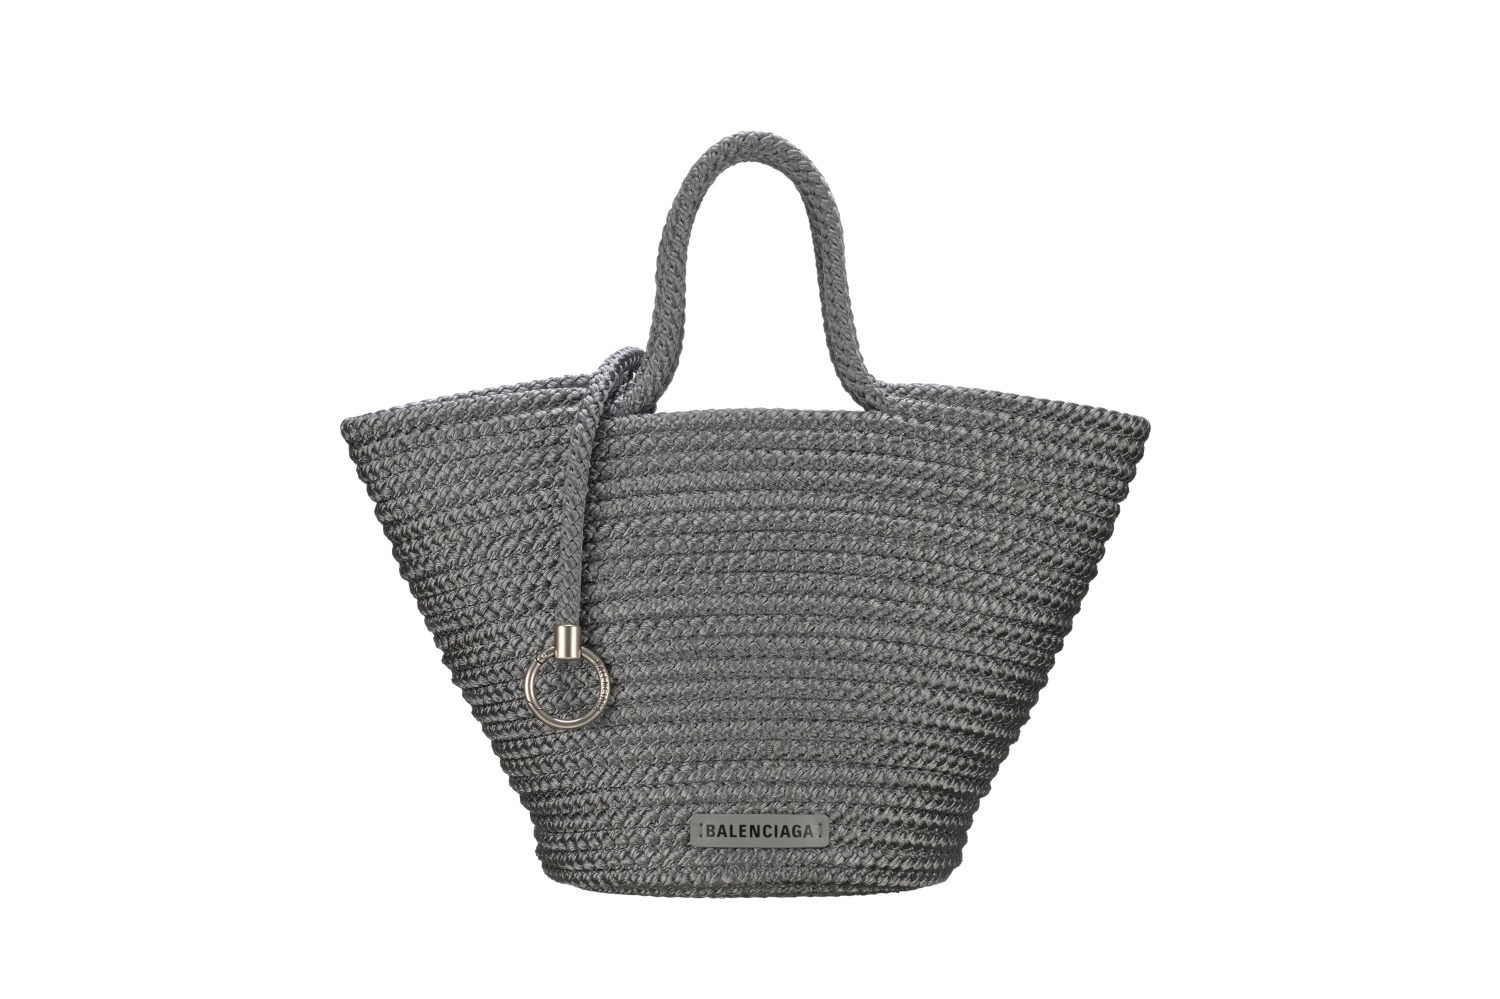 バレンシアガ“円錐型”バスケットバッグ「イビザ 」に、日本限定 